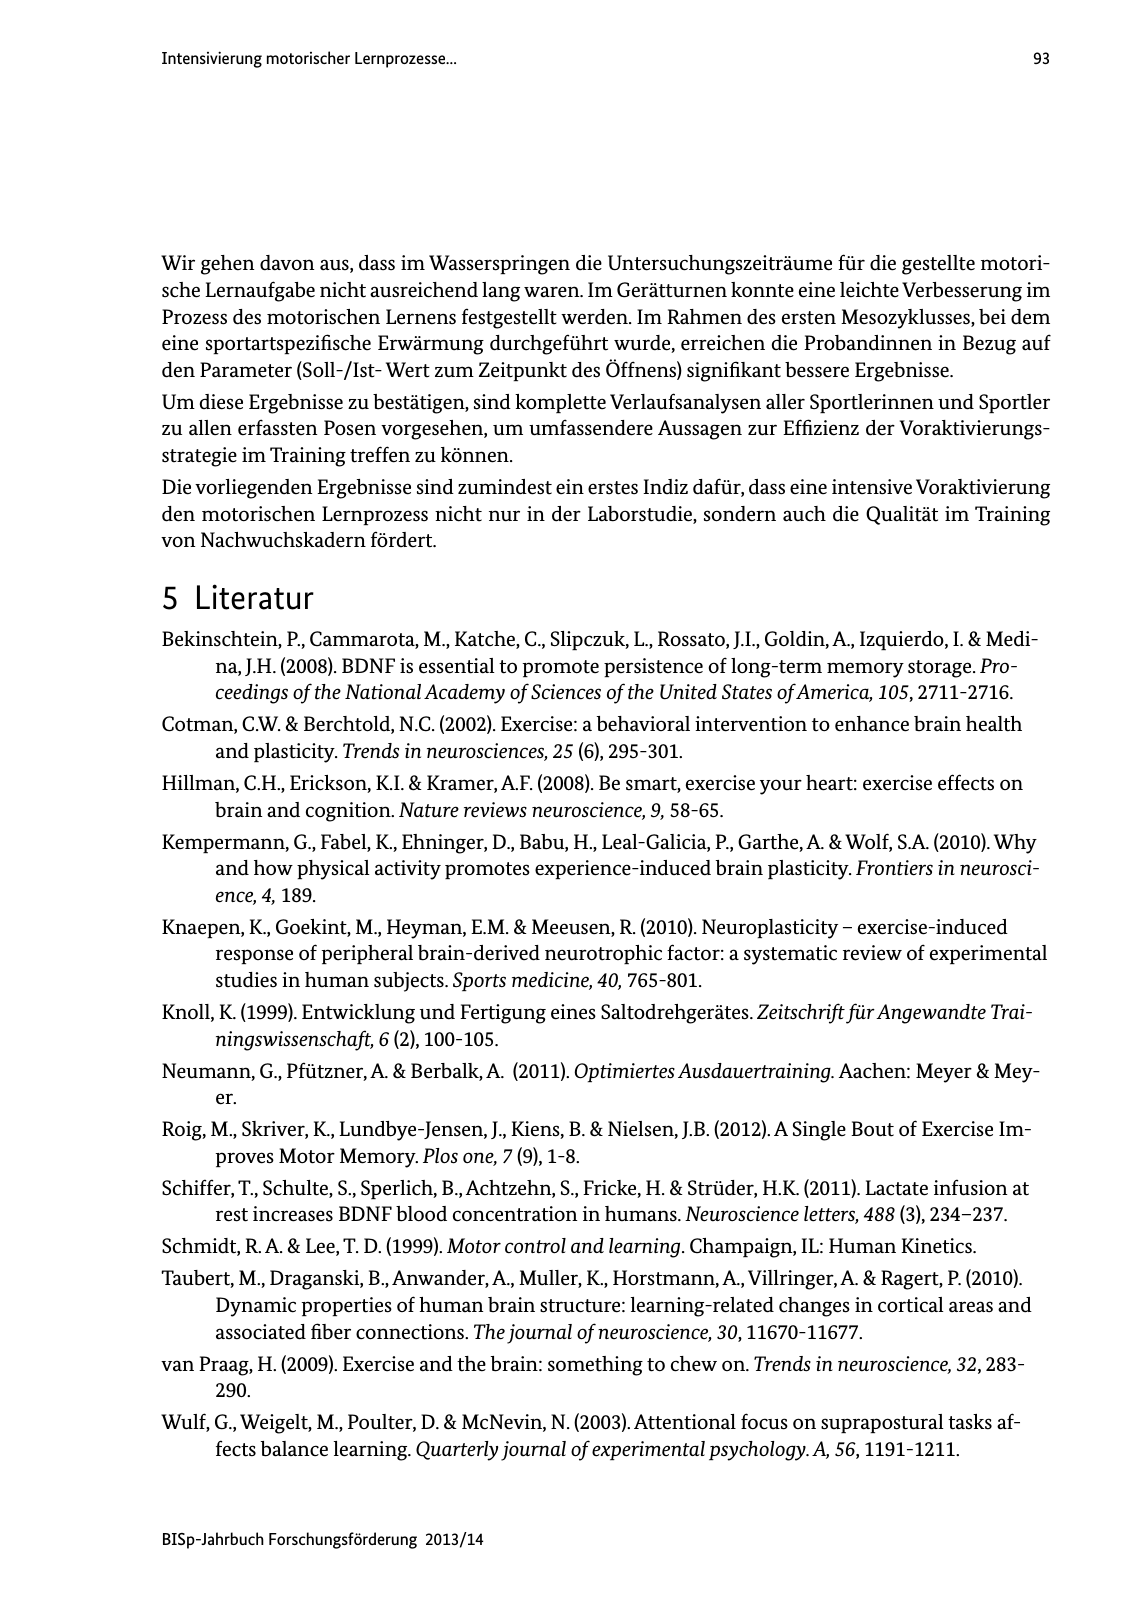 Vorschau BISp-Jahrbuch Forschungsförderung 2013/14 Seite 94